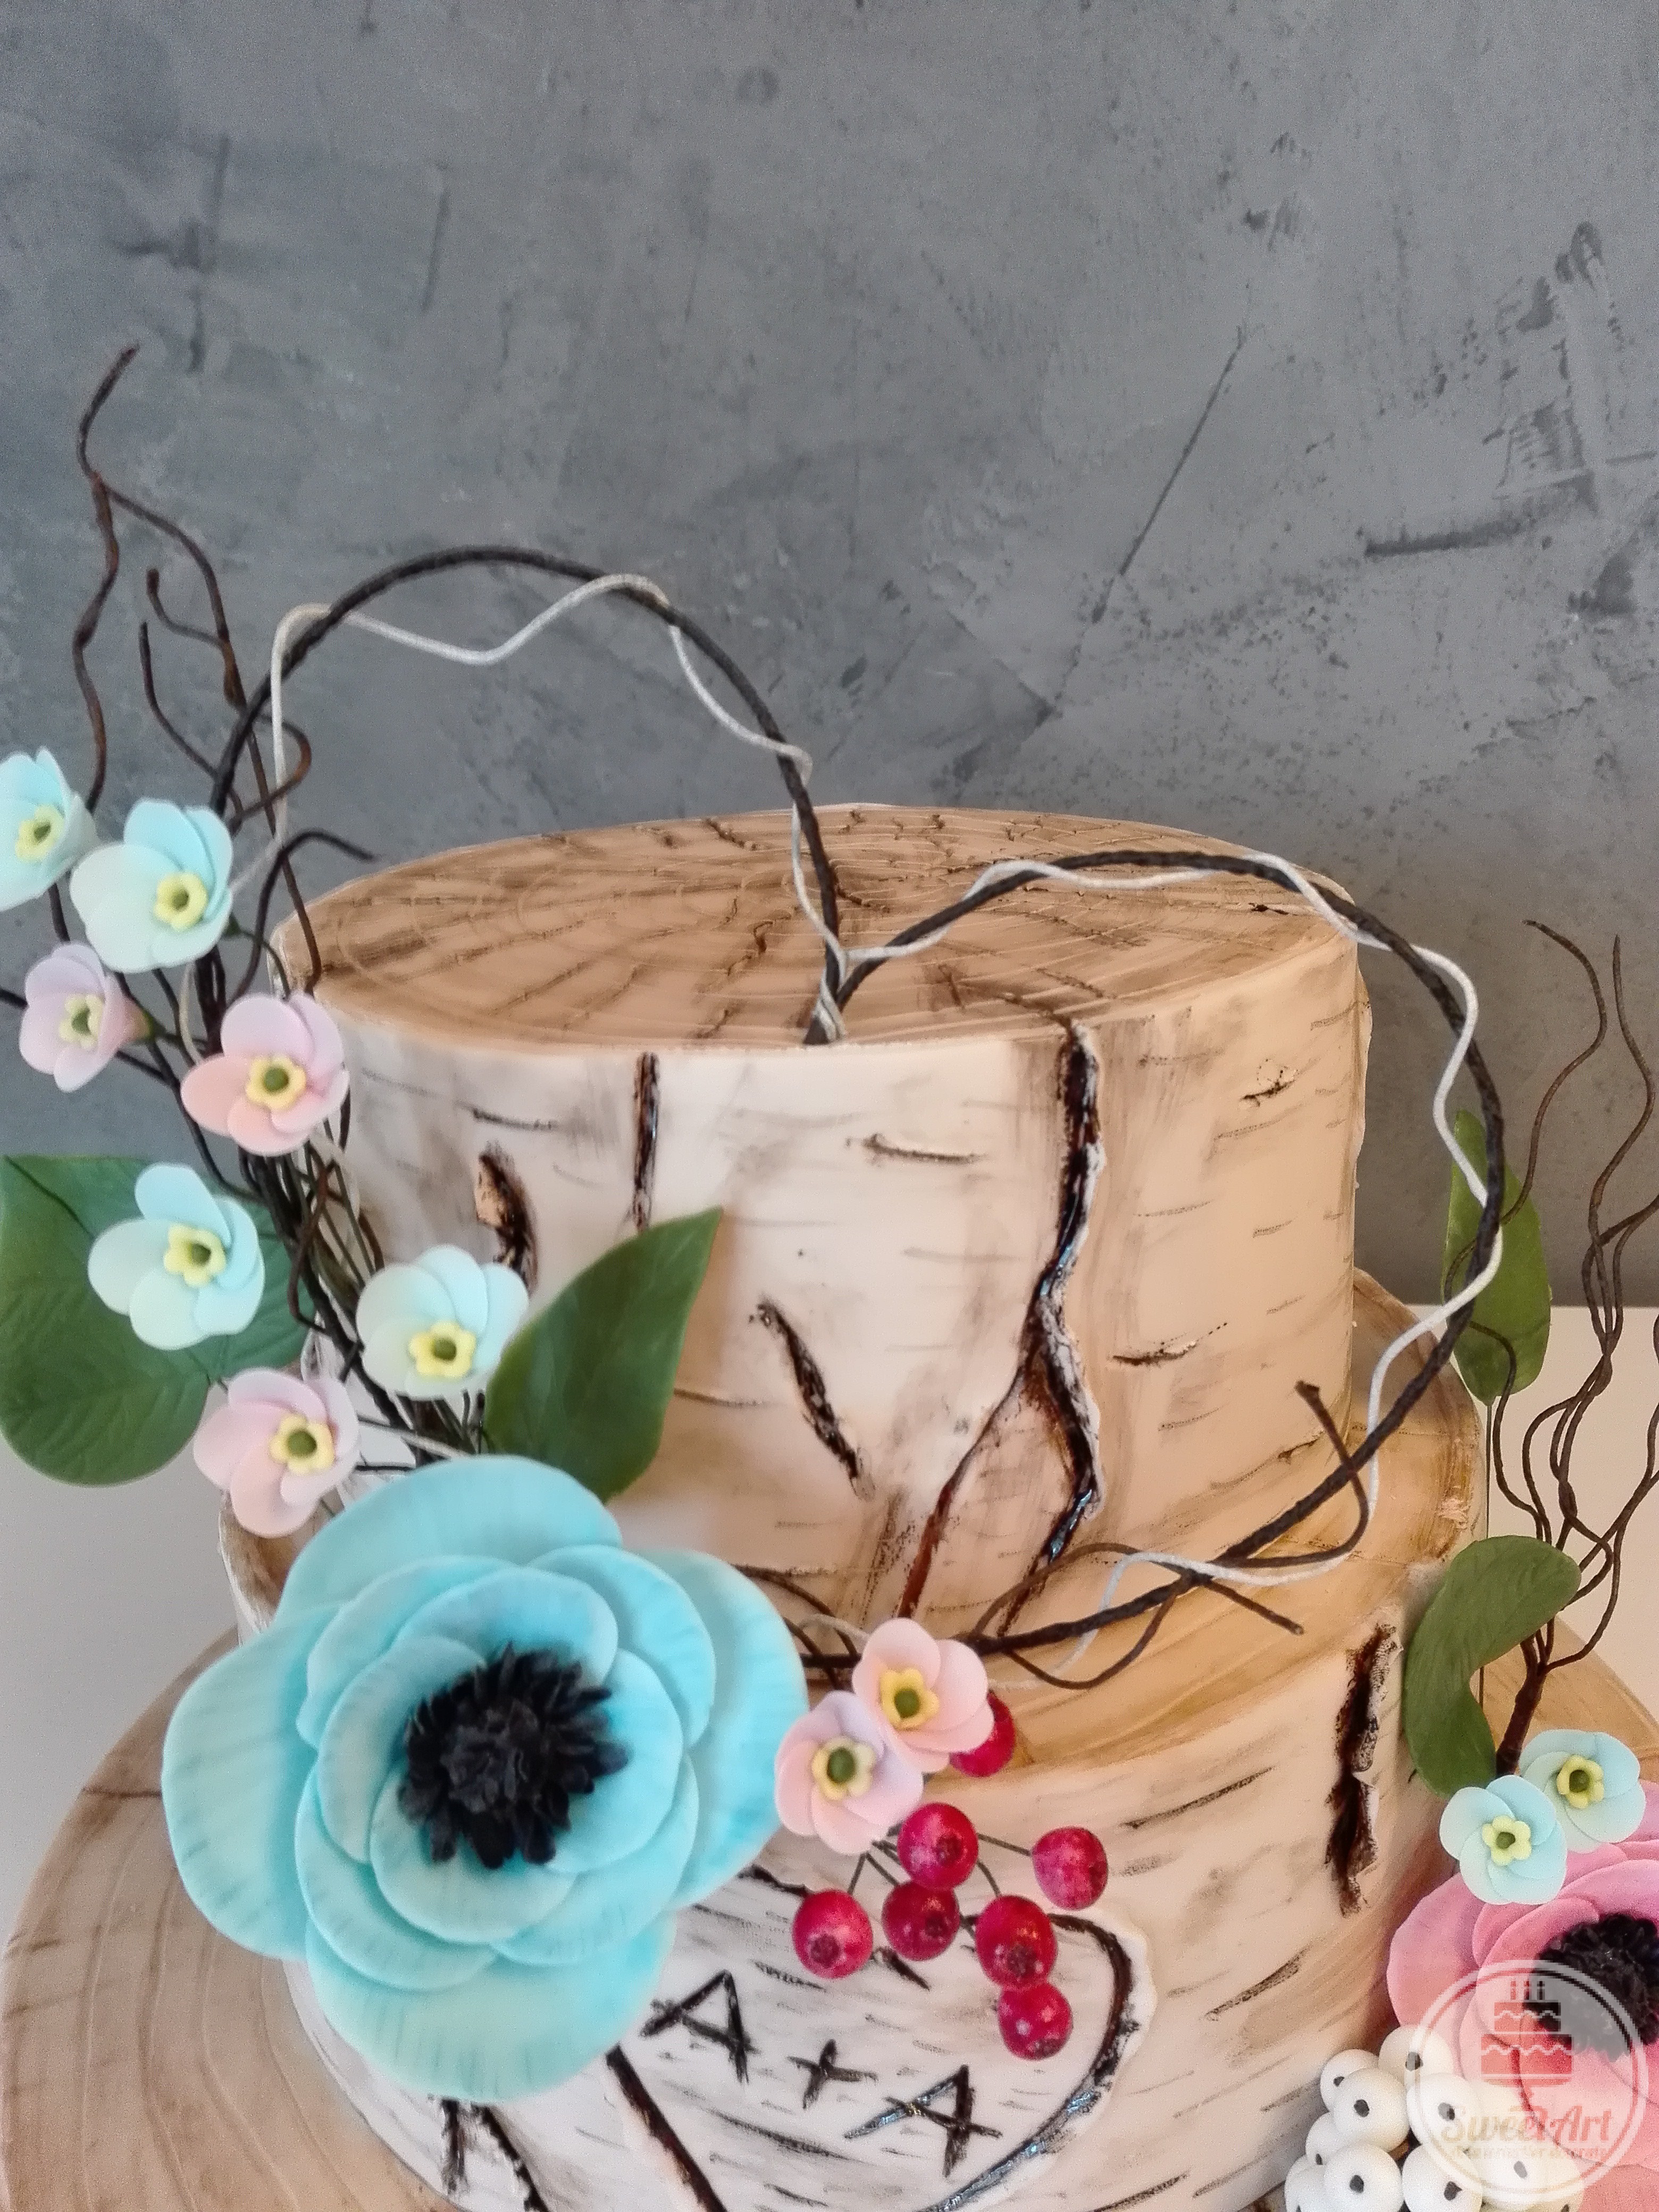 Tort romantic buștean de mesteacăn și aranjament inimă din crenguțe cu flori: anemone coronaria bleu și roz, myosotis sau flori-de-nu-mă-uita bleu și roz, bobițe de vâsc și bobițe de zăpadă - Symphoricarpus albus și frunze